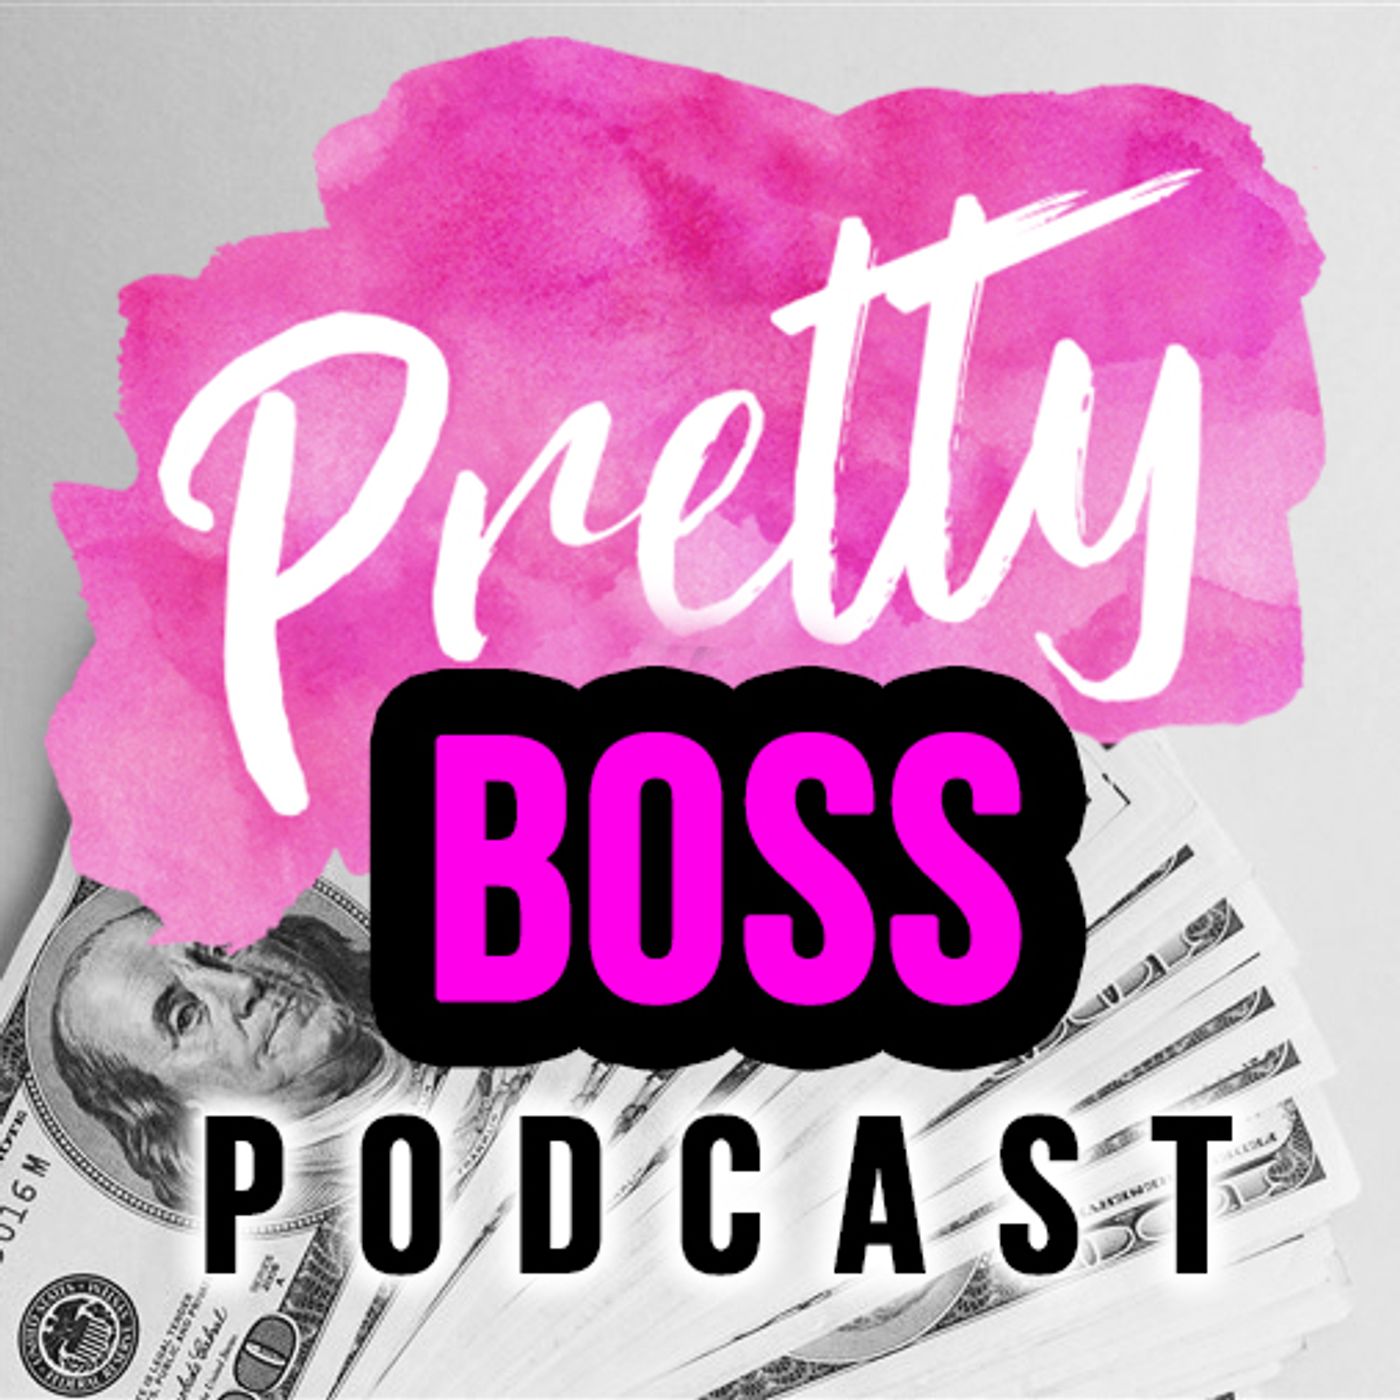 Pretty Boss Podcast